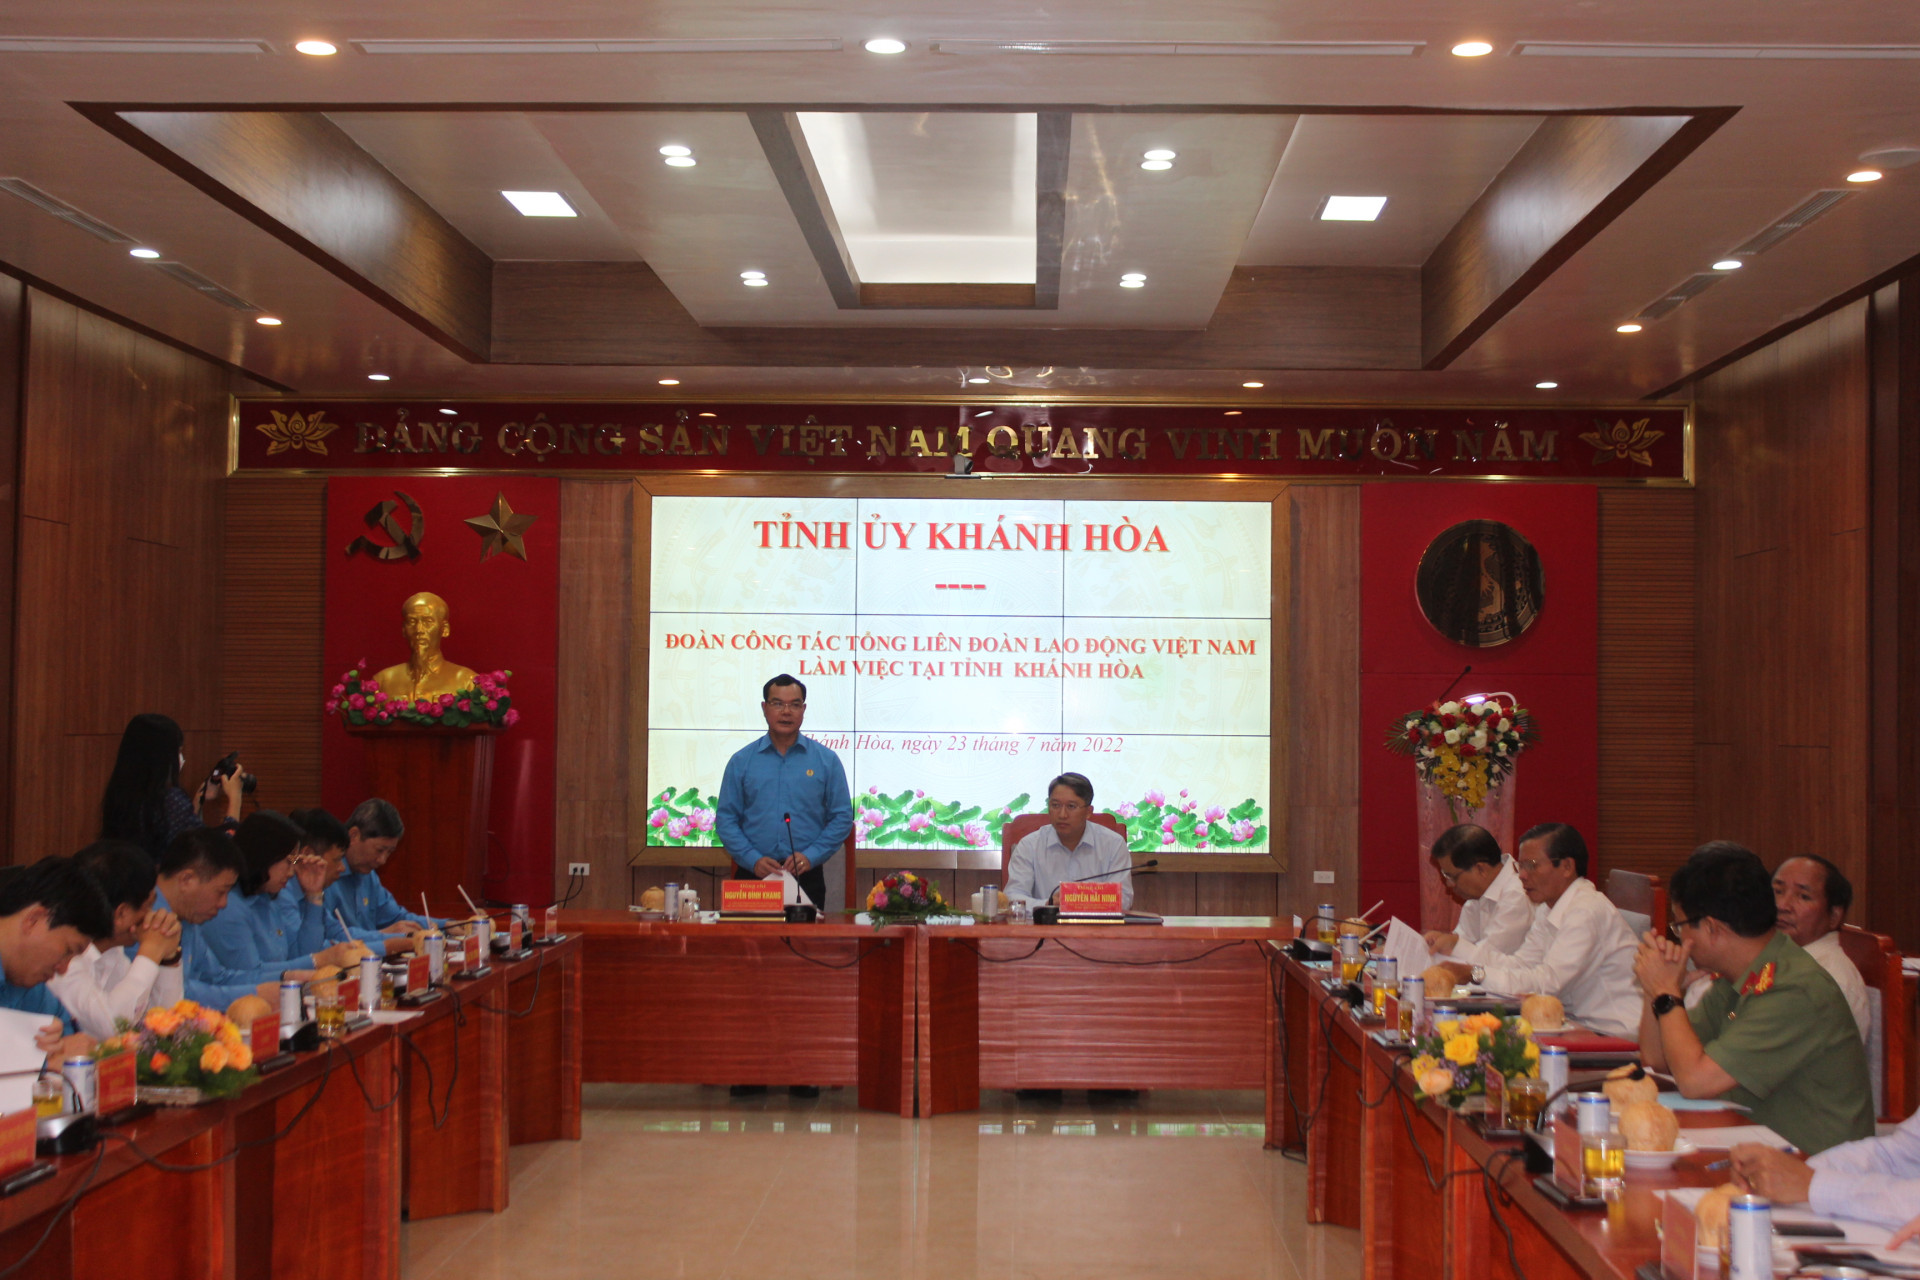 Ông Nguyễn Đình Khang phát biểu tại buổi làm việc với lãnh đạo tỉnh.